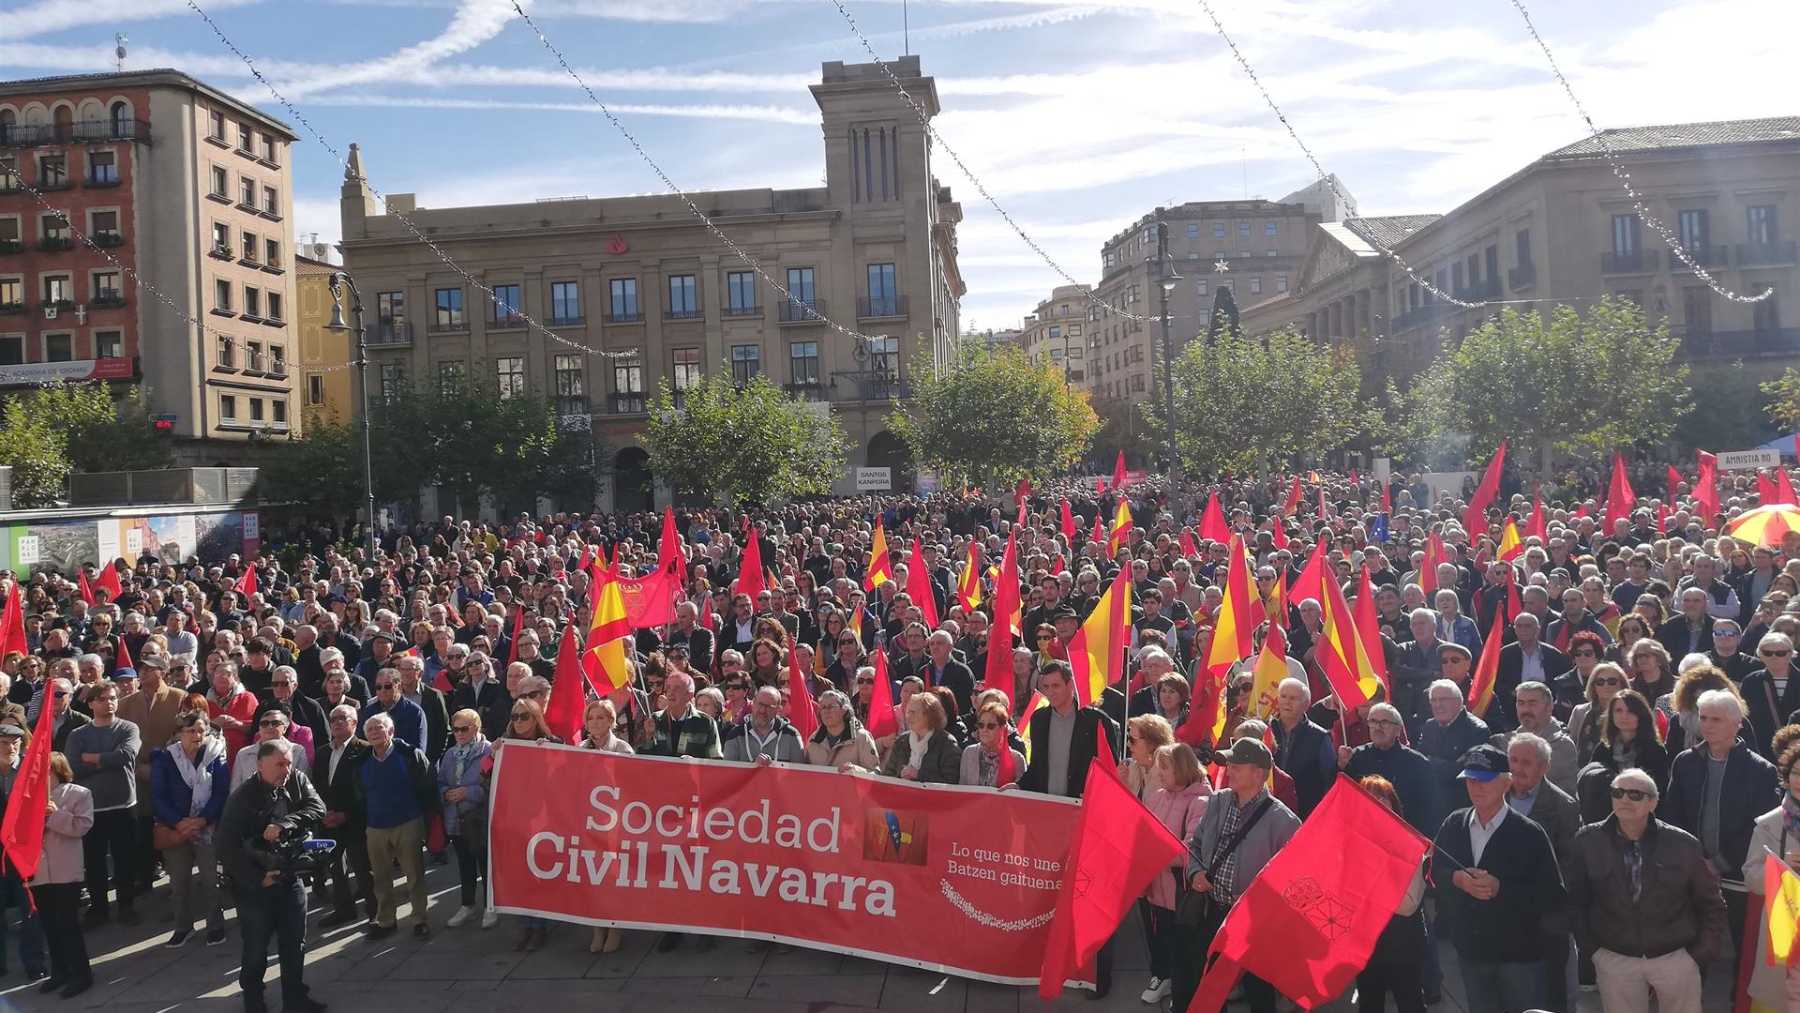 Sociedad Civil protestará en Pamplona y Tudela contra la ley de amnistía el día de su aprobación